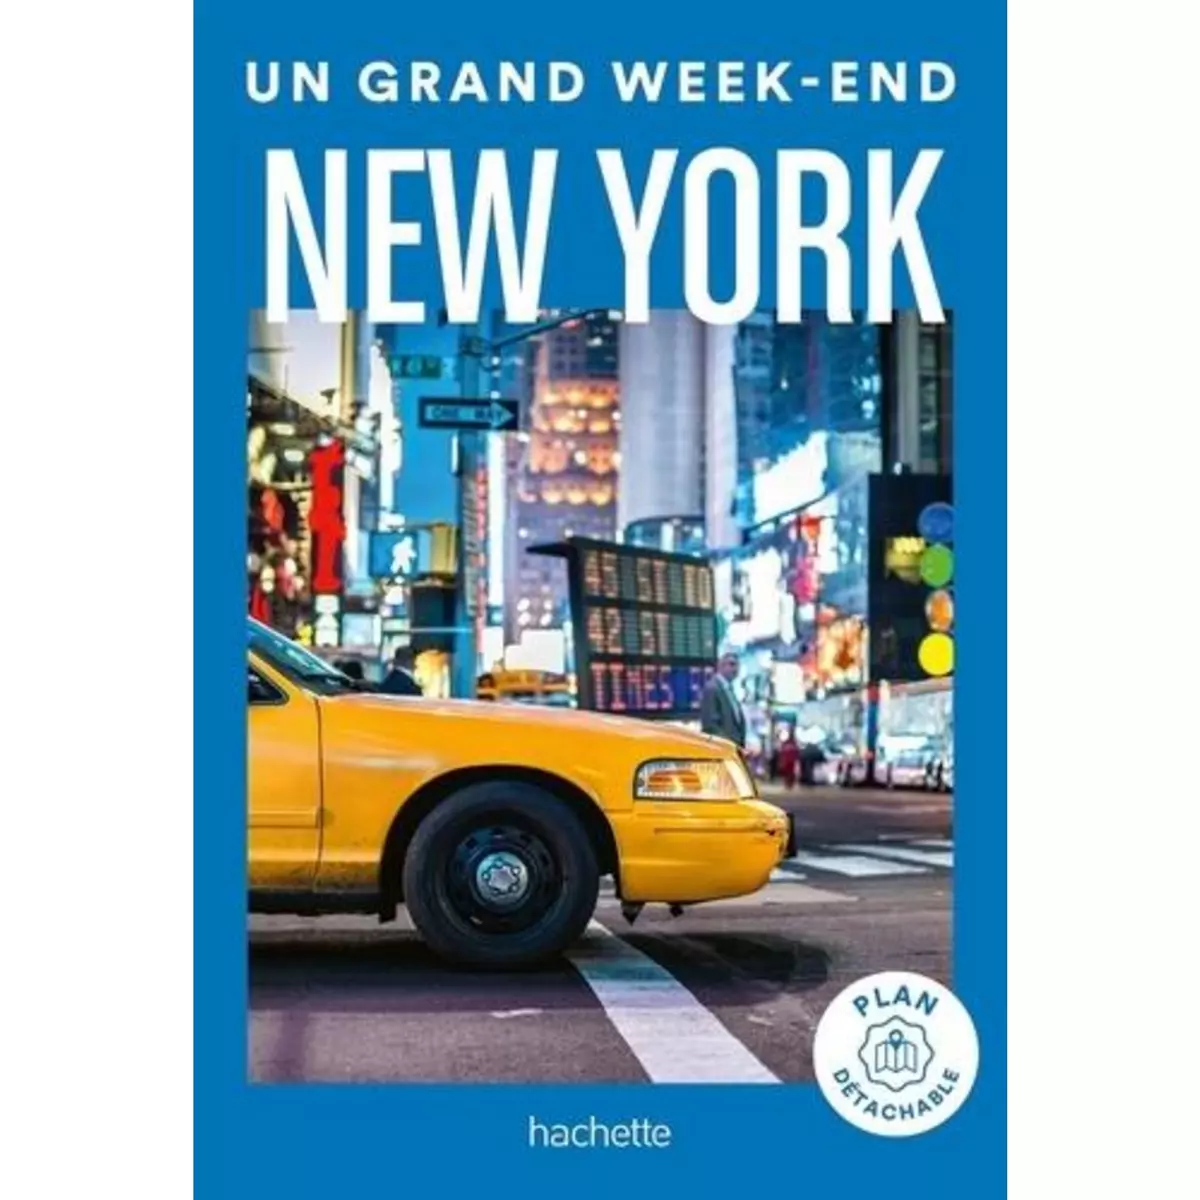  UN GRAND WEEK-END A NEW YORK, Richard Vanessa